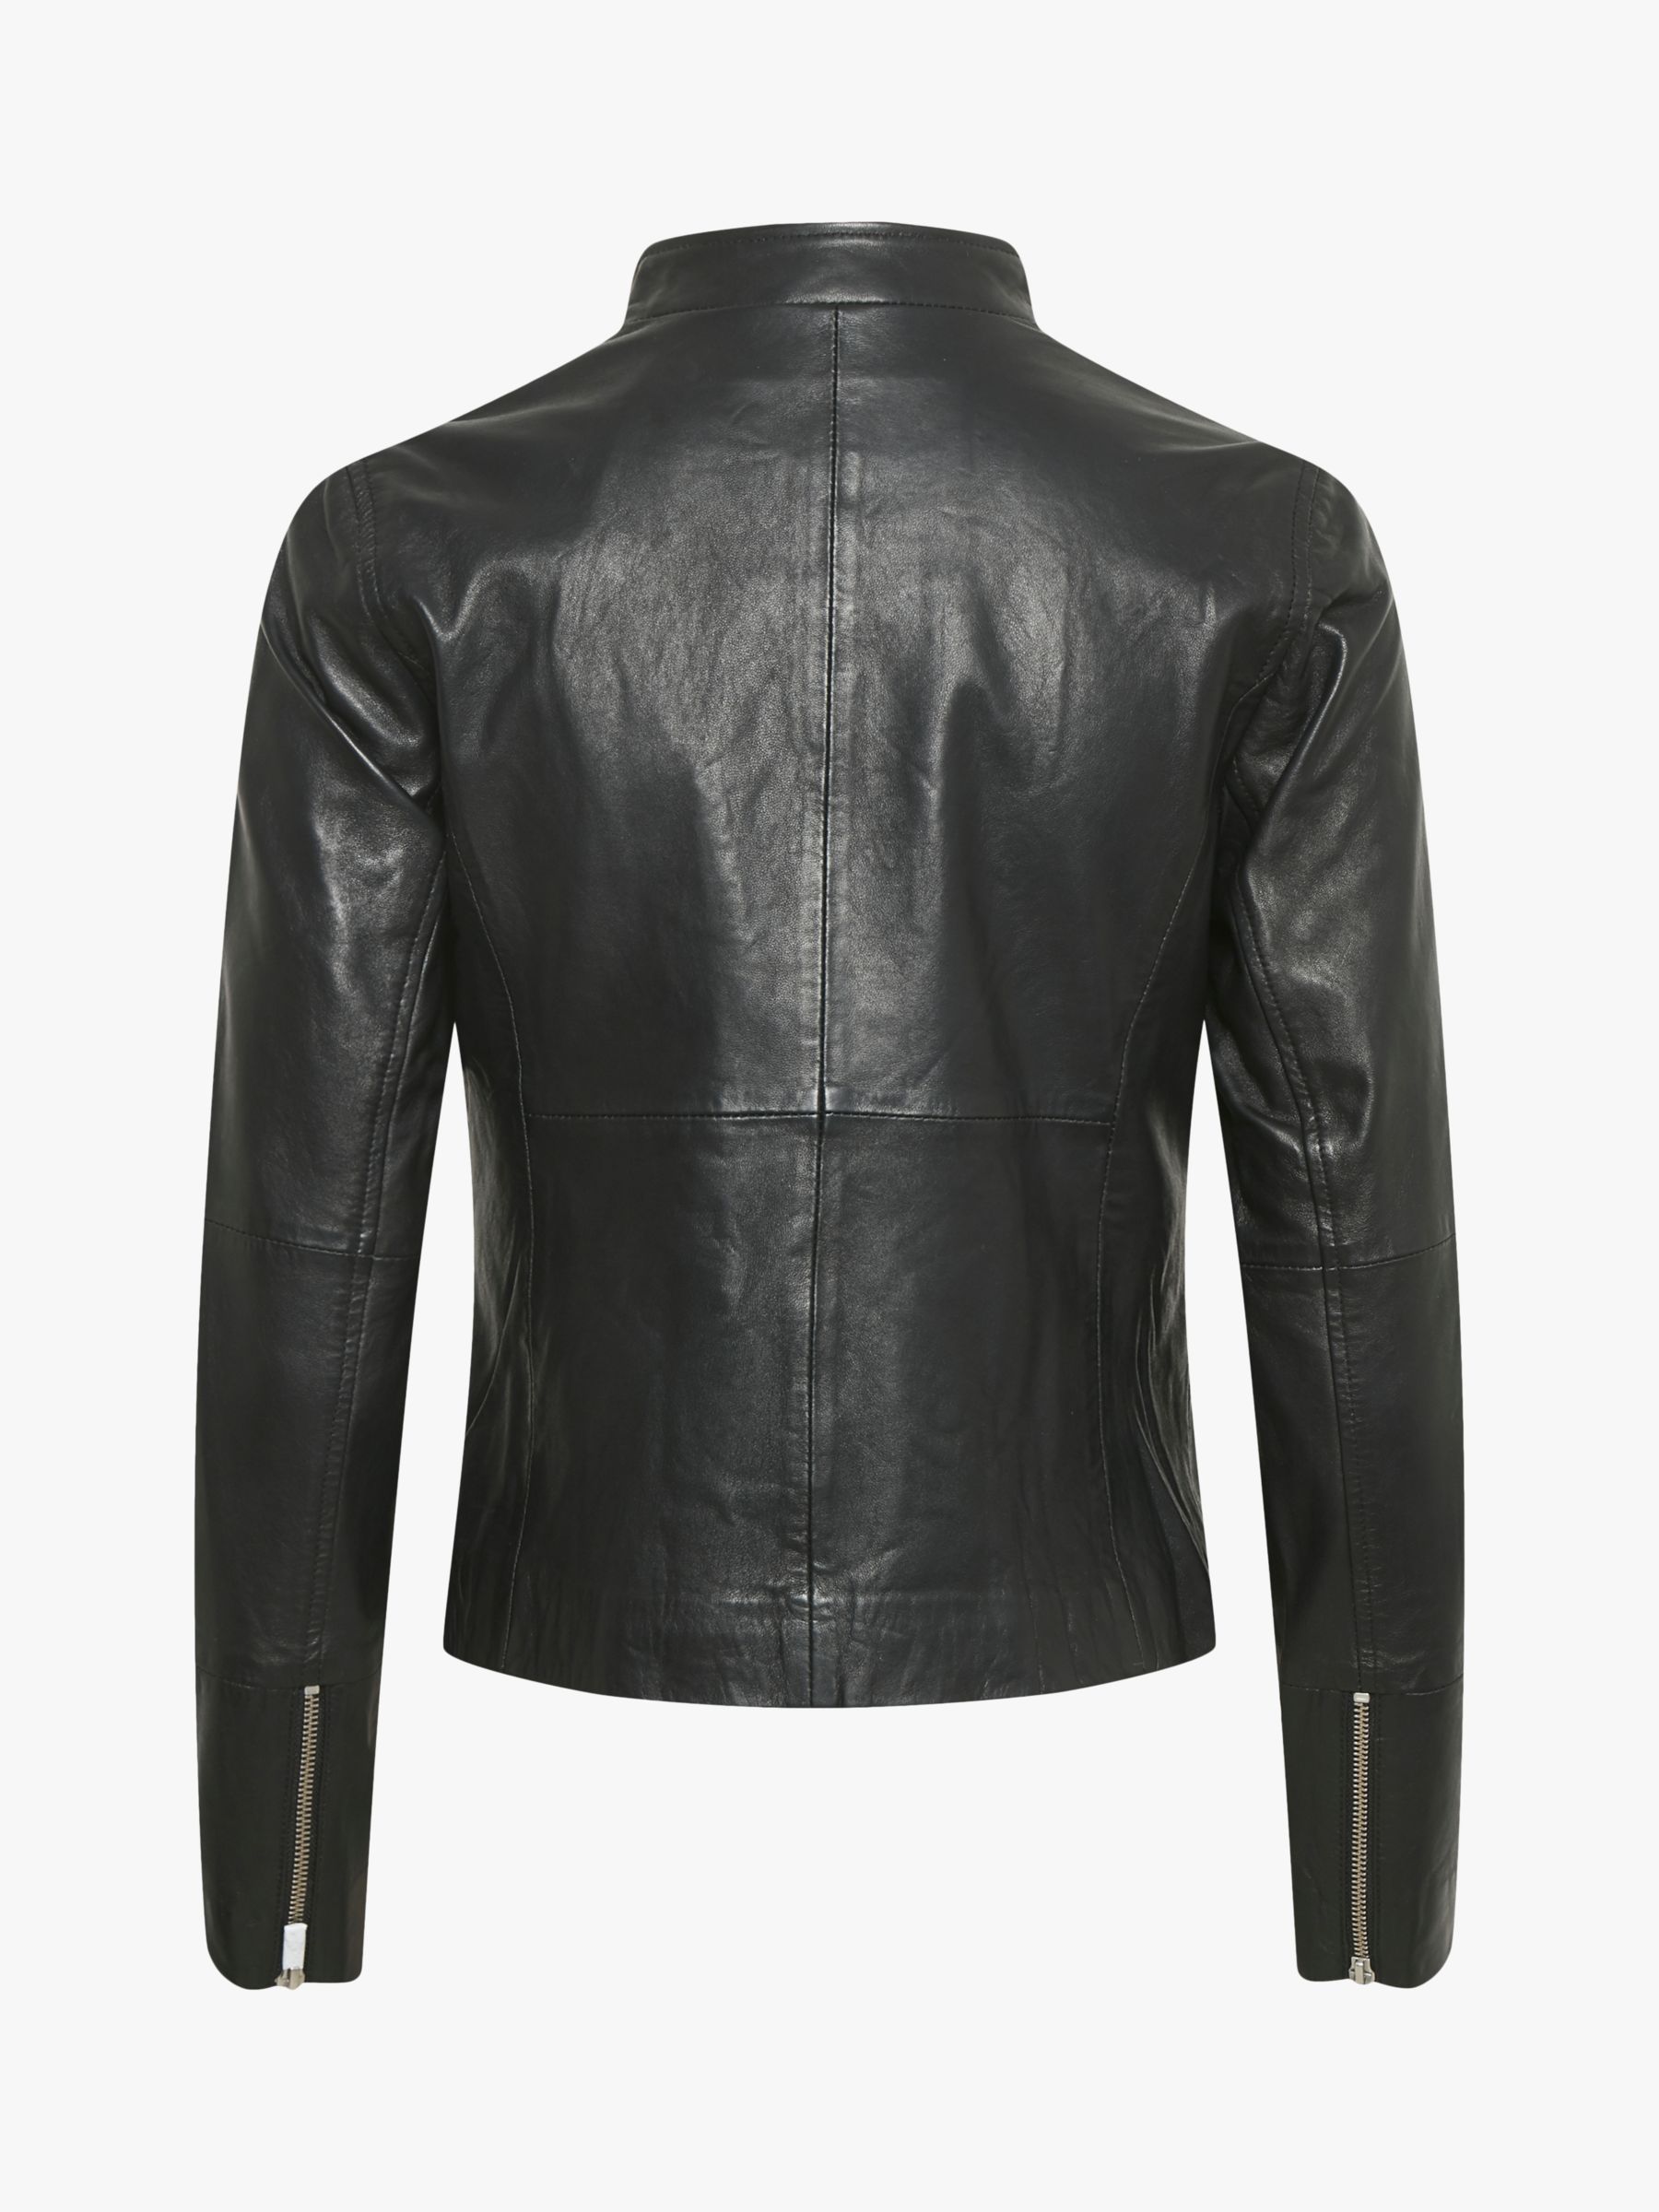 Buy Part Two Frances Leather Biker Jacket, Black Online at johnlewis.com